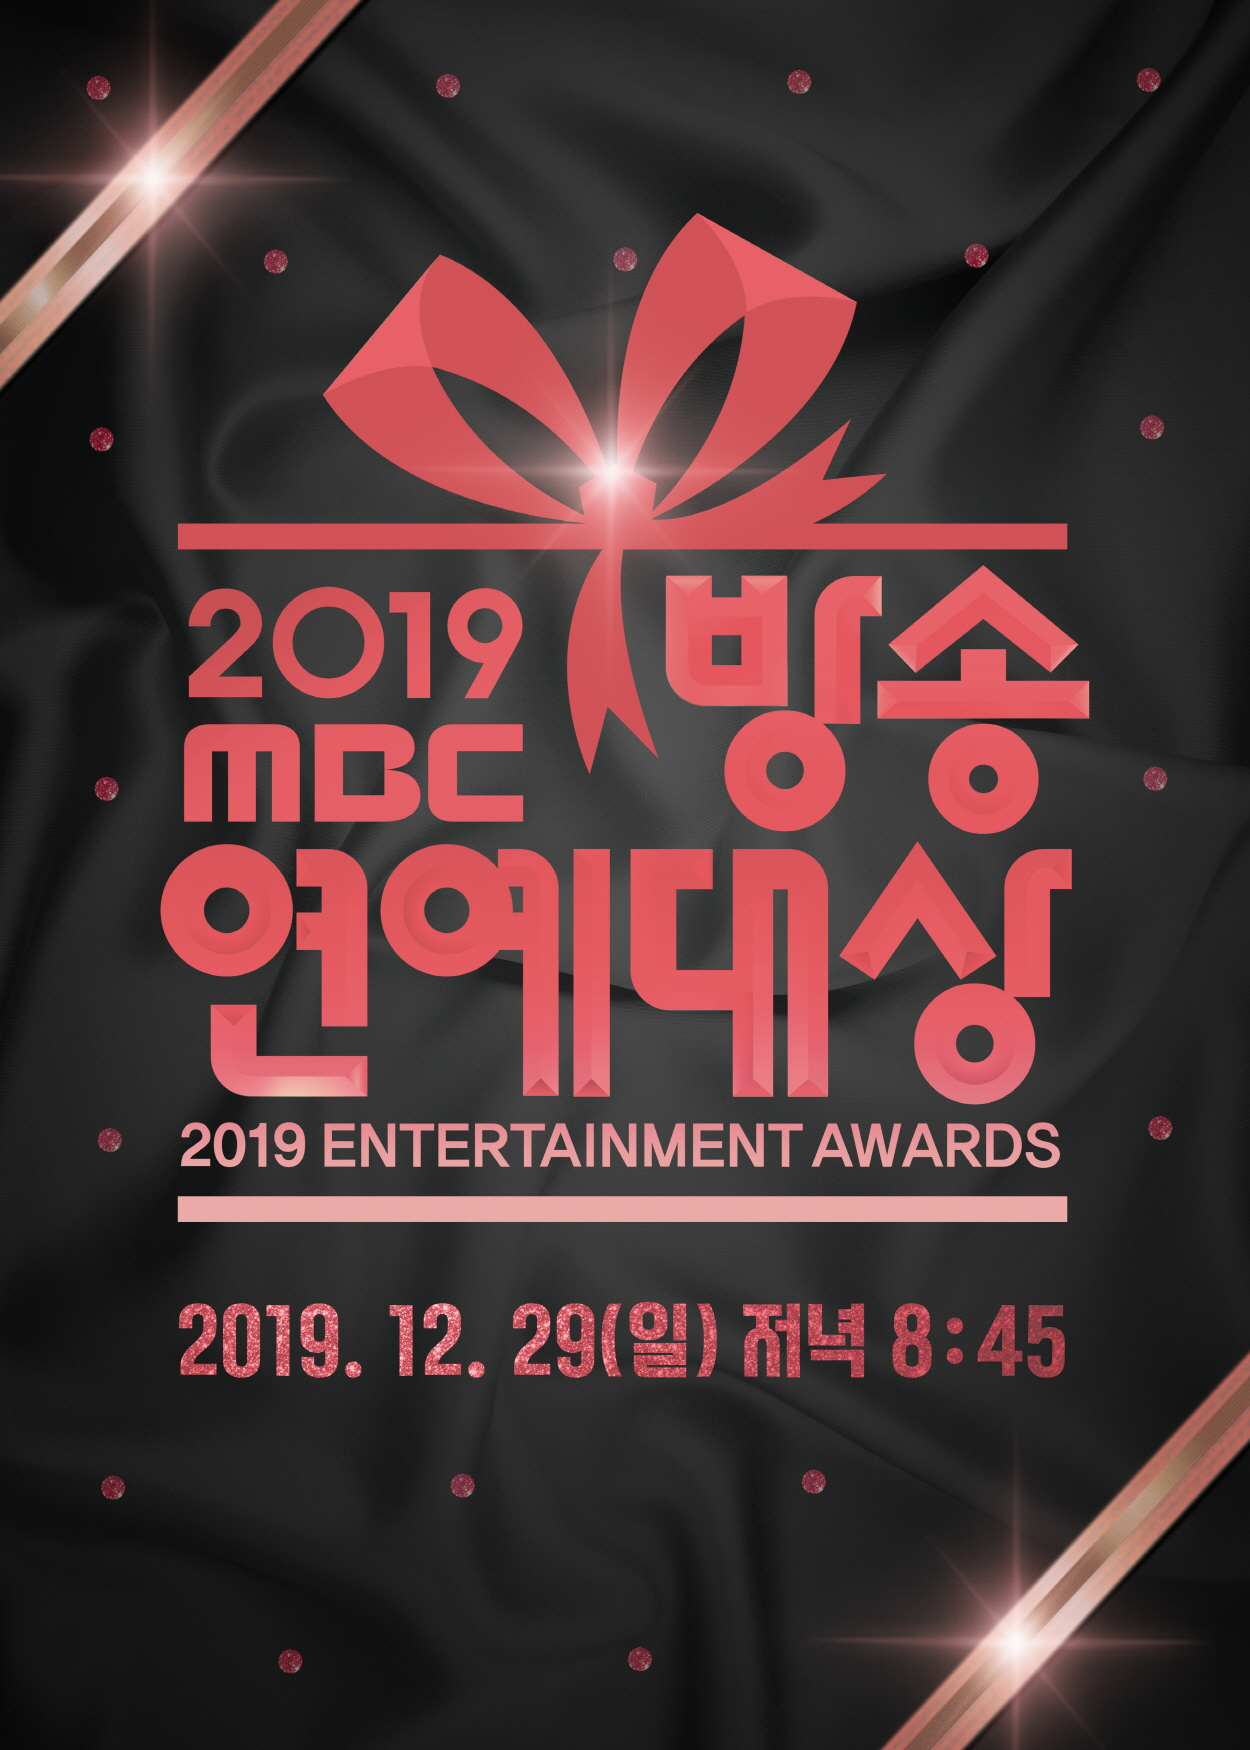 MBC Entertainment Awards 2019 live stream details